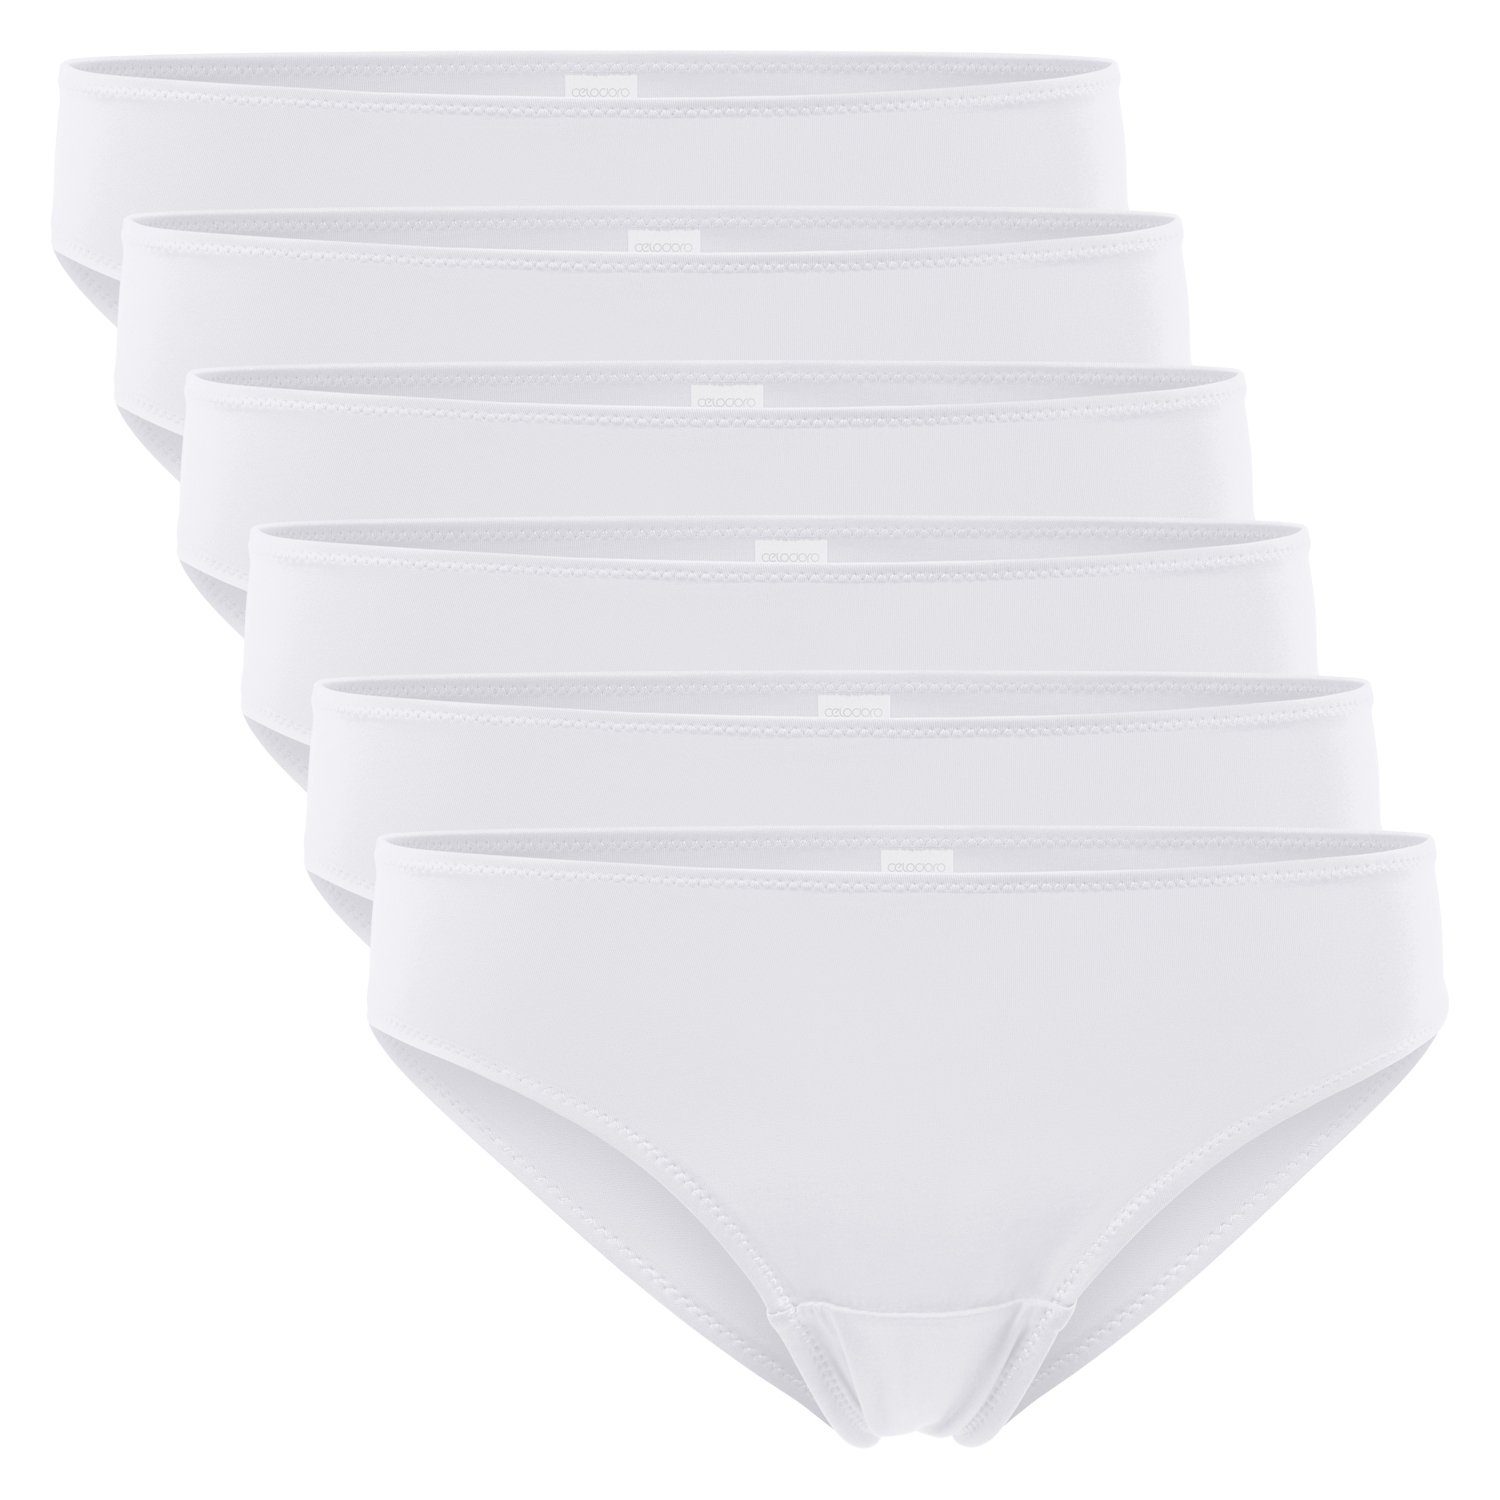 celodoro Slip Damen Bikini Slip aus Quick Dry-Fasern (6er Pack)